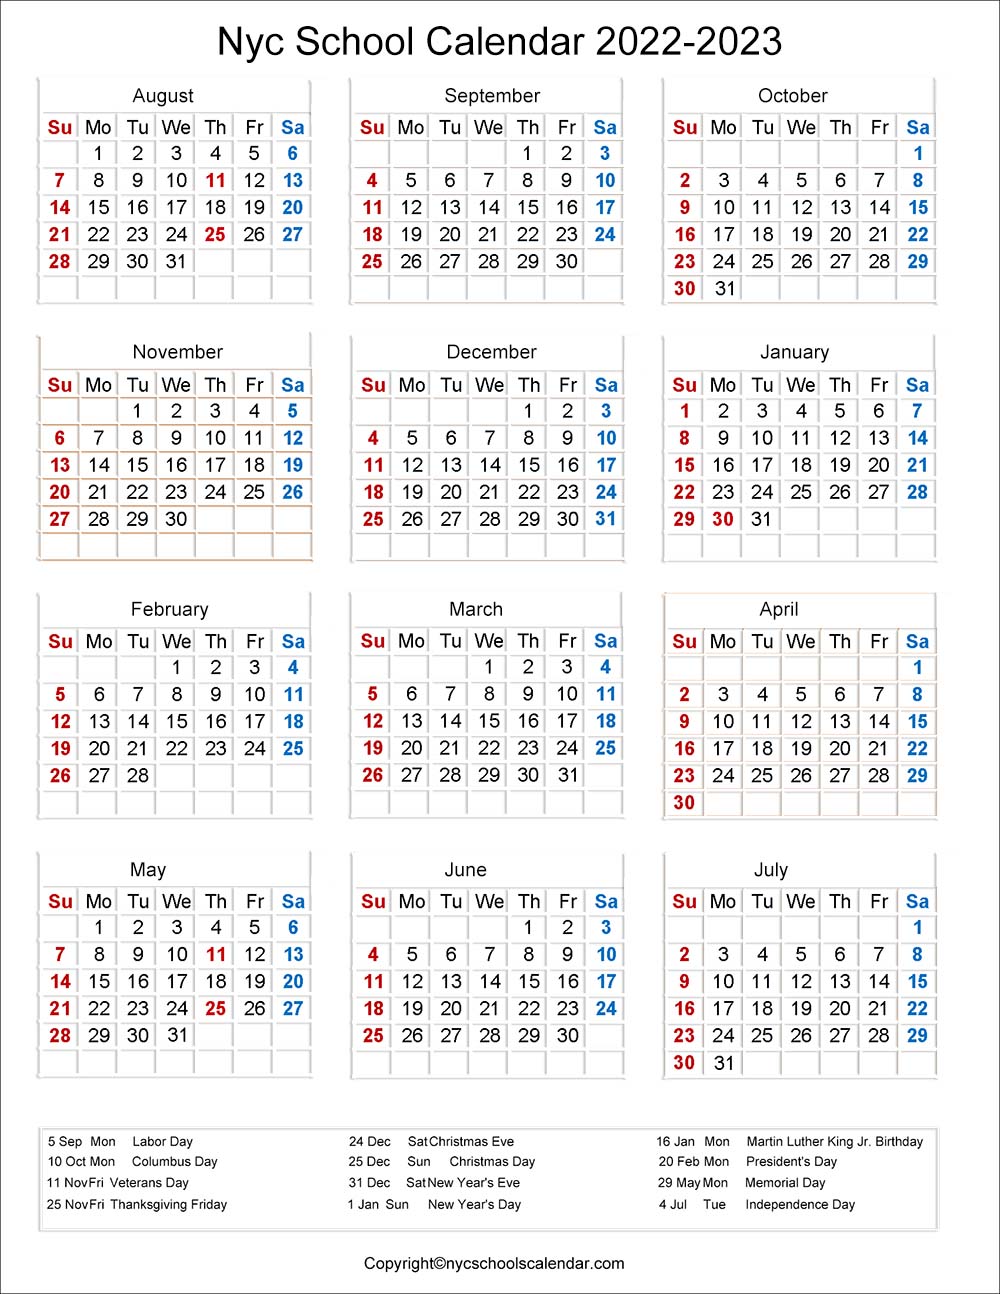 Nyc Board Of Ed Calendar 2022 23 ❤️Nyc School Holidays Calendar 2022-2023 ✓